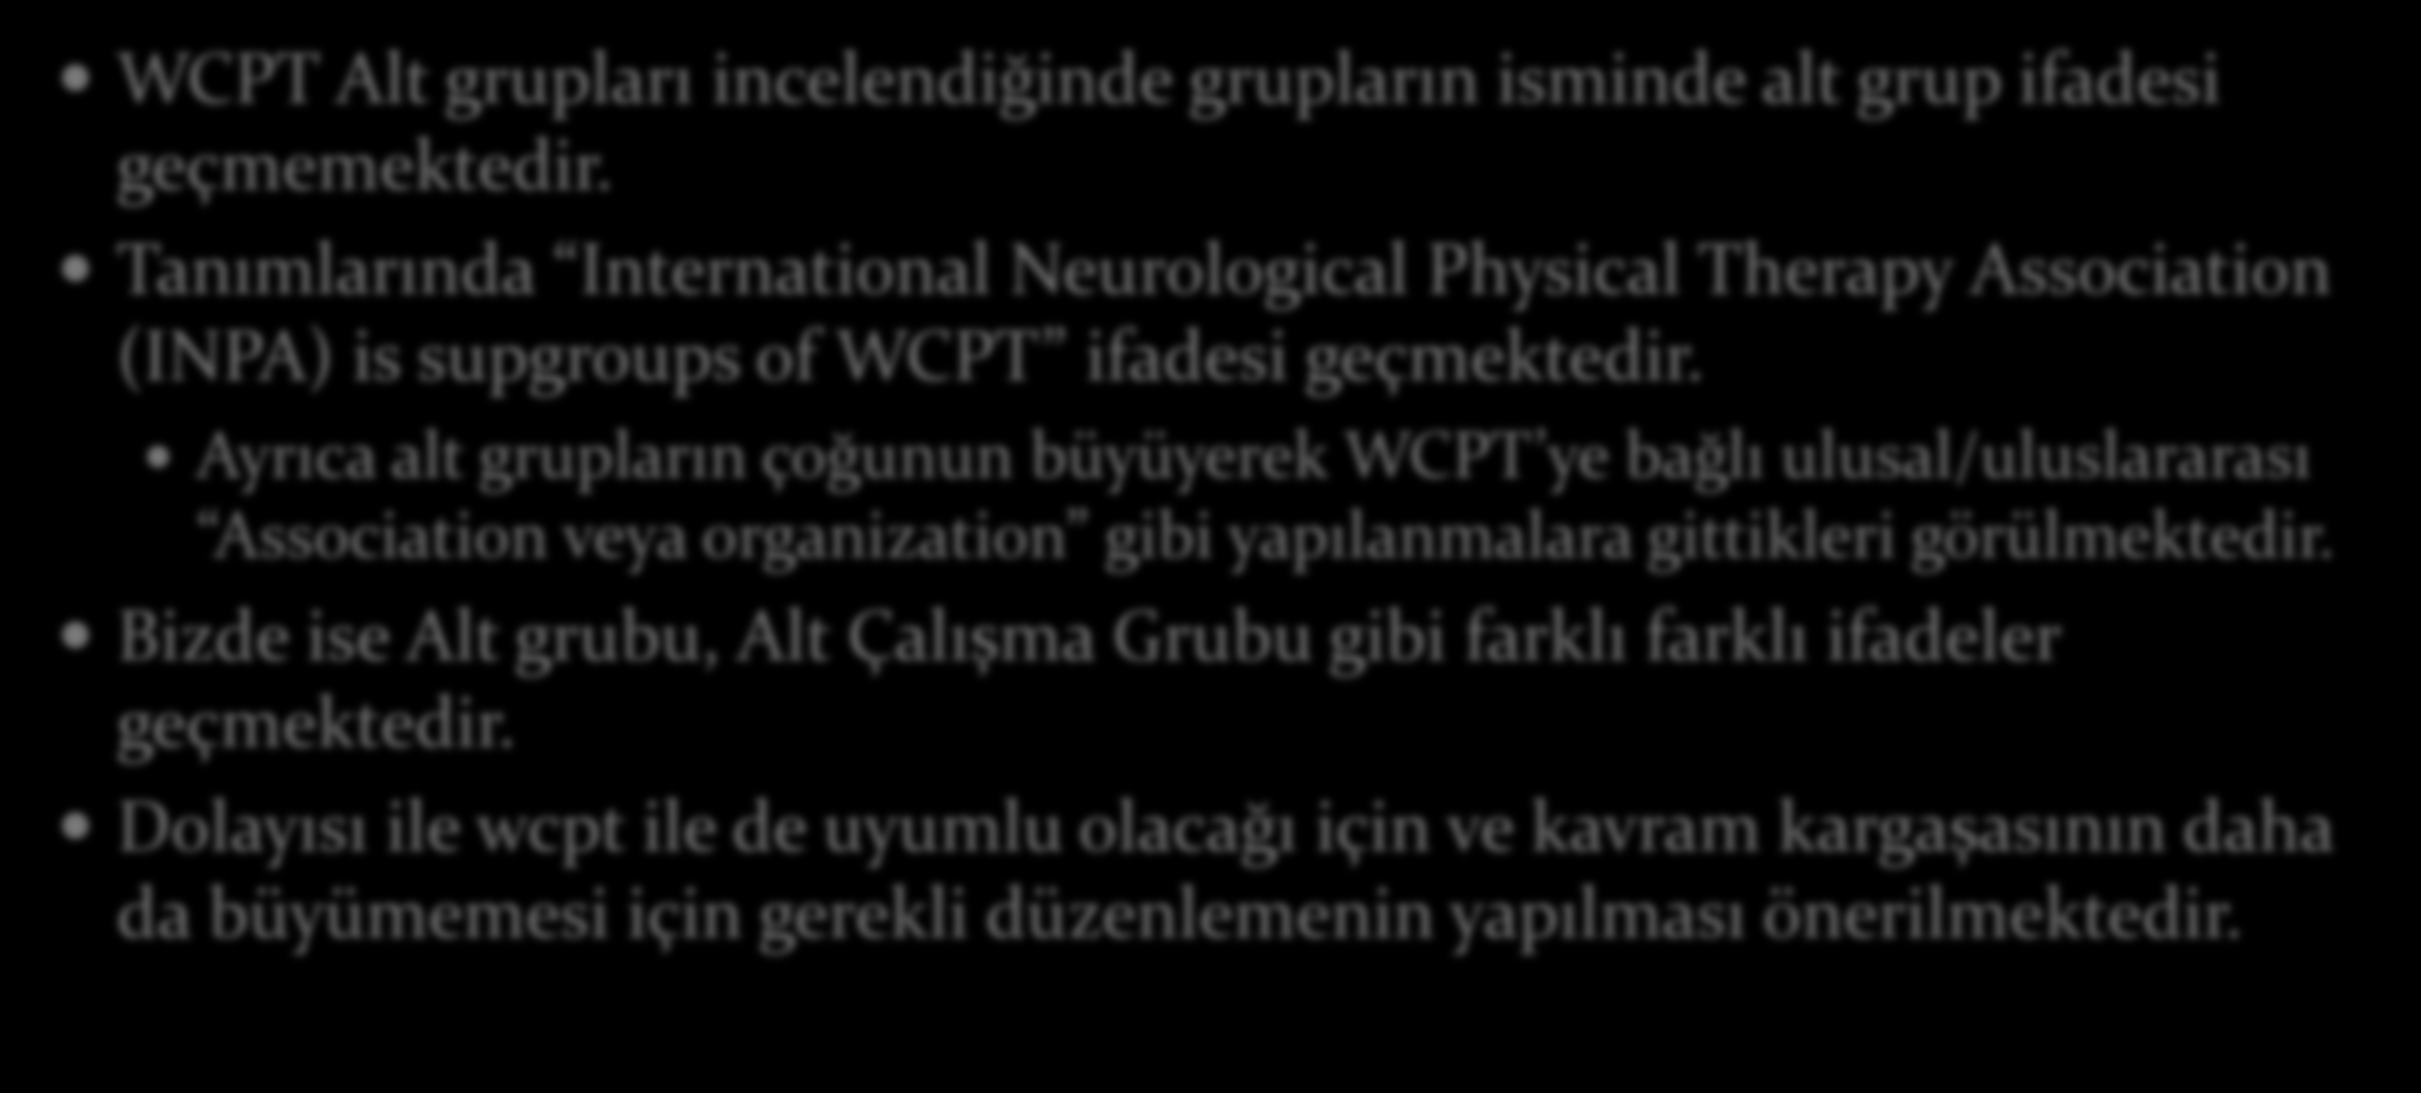 TFD Alt Grupları İçin Öneriler ve Sorular WCPT Alt grupları incelendiğinde grupların isminde alt grup ifadesi geçmemektedir.